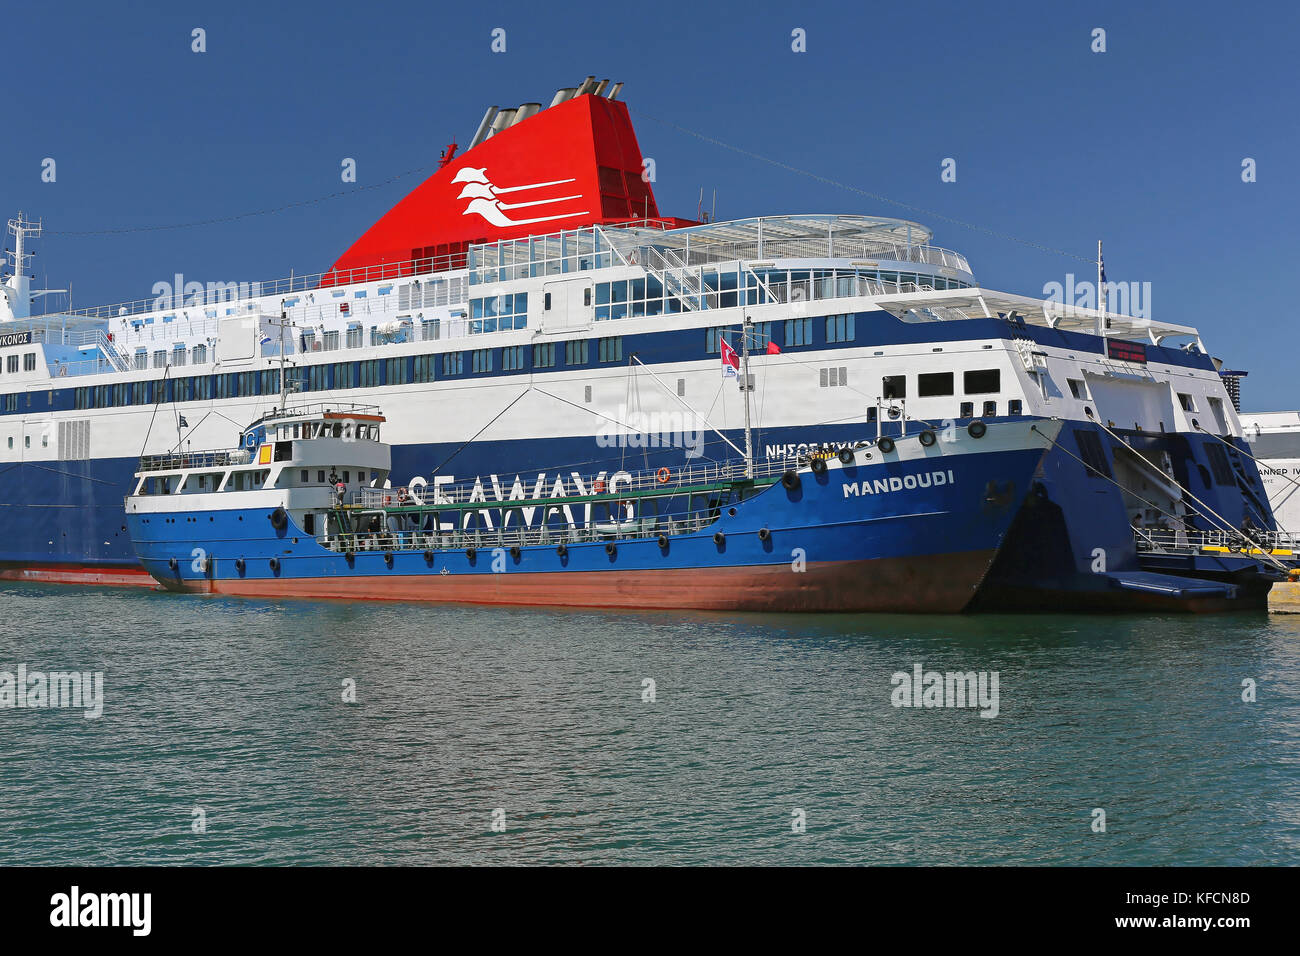 Piräus, Griechenland - Mai 04: Betankung von Schiffen in Piräus am Mai 04, 2015. seaways Fähre Auffüllung mit Kraftstoff aus Eko mandoudi Öltanker im Hafen von Pir Stockfoto